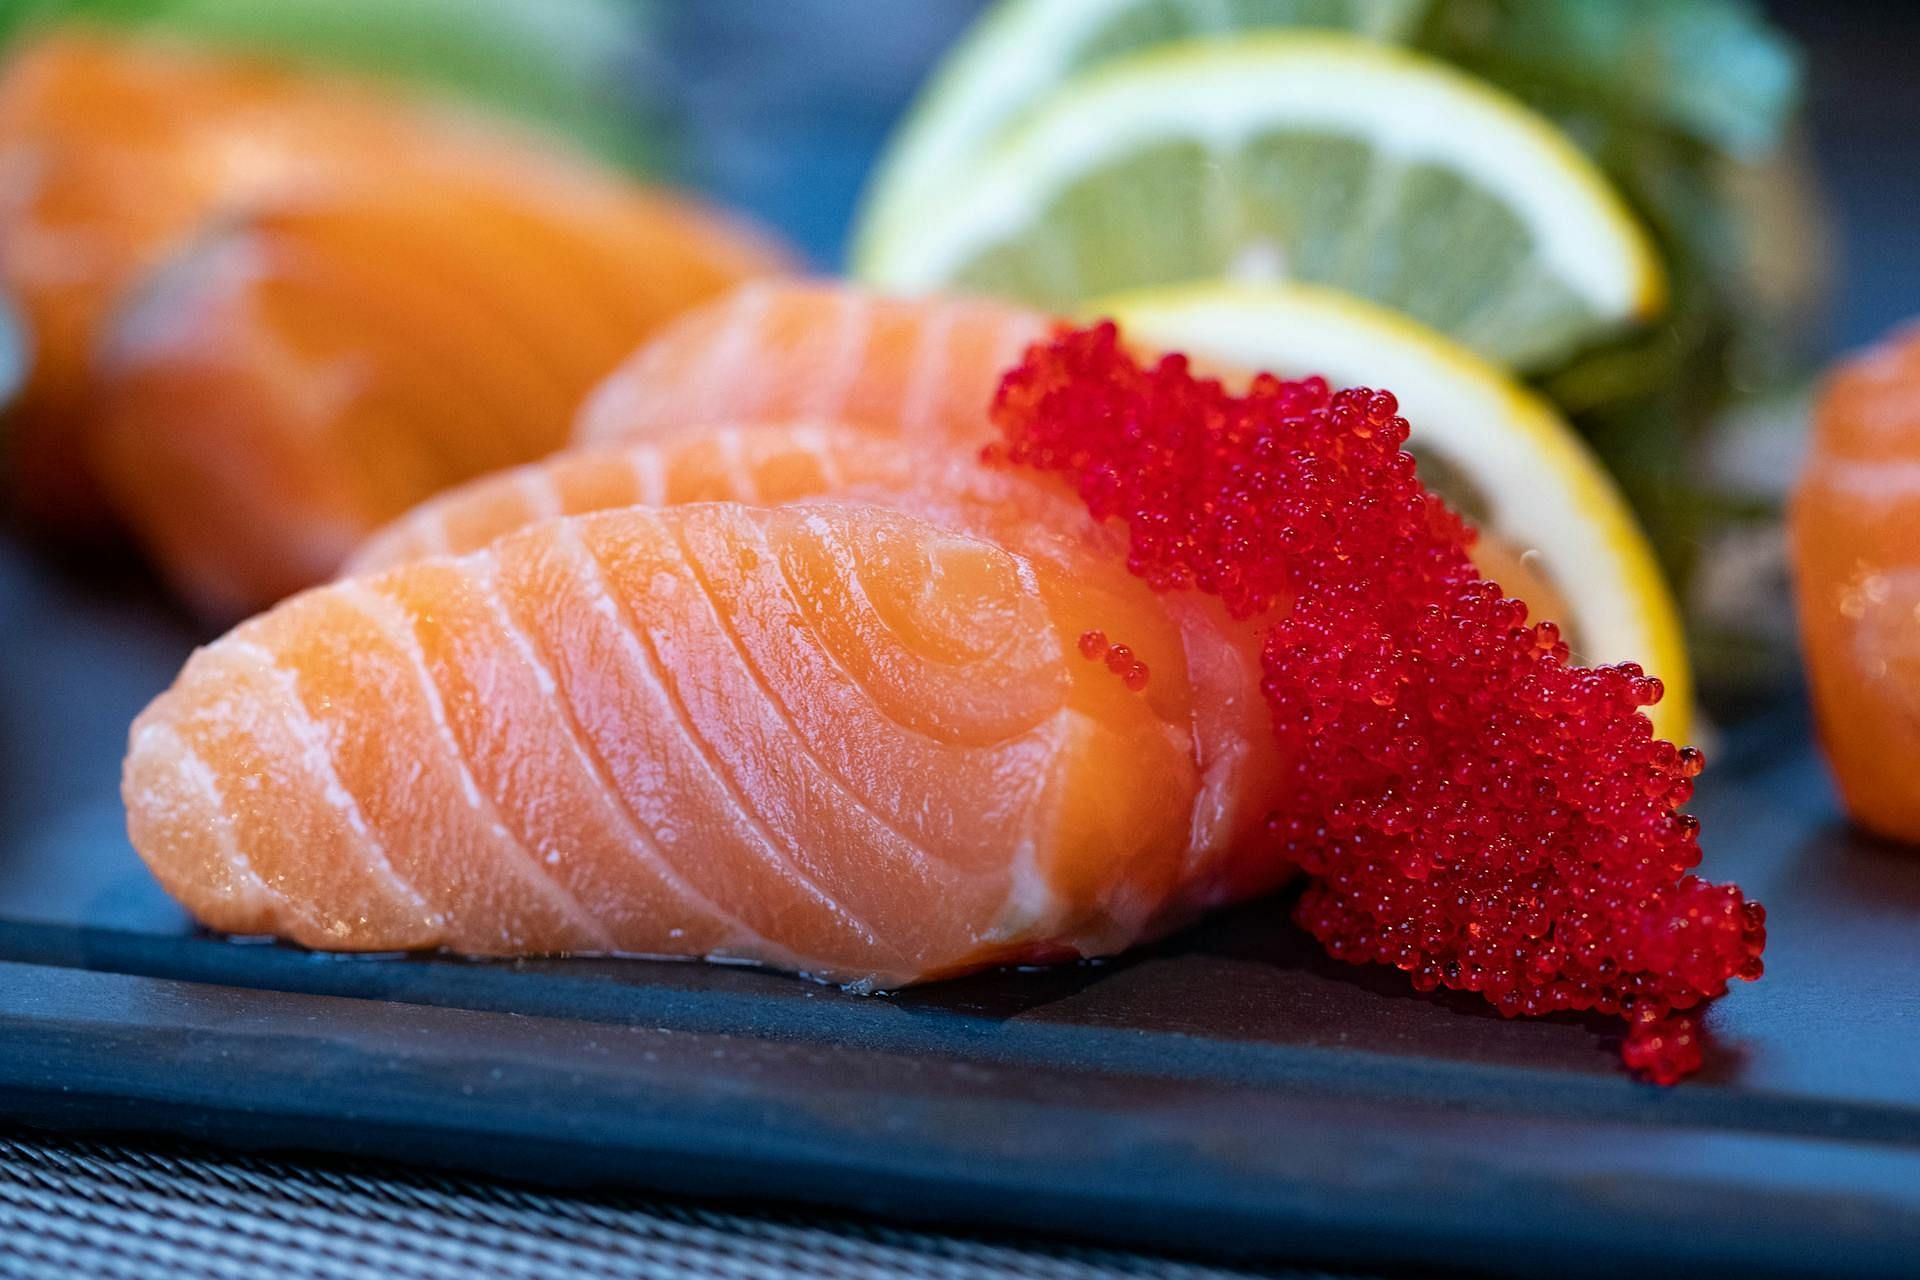 Fish contains omega-3 fatty acids. (Image via Pexels/Valeria Boltneva)